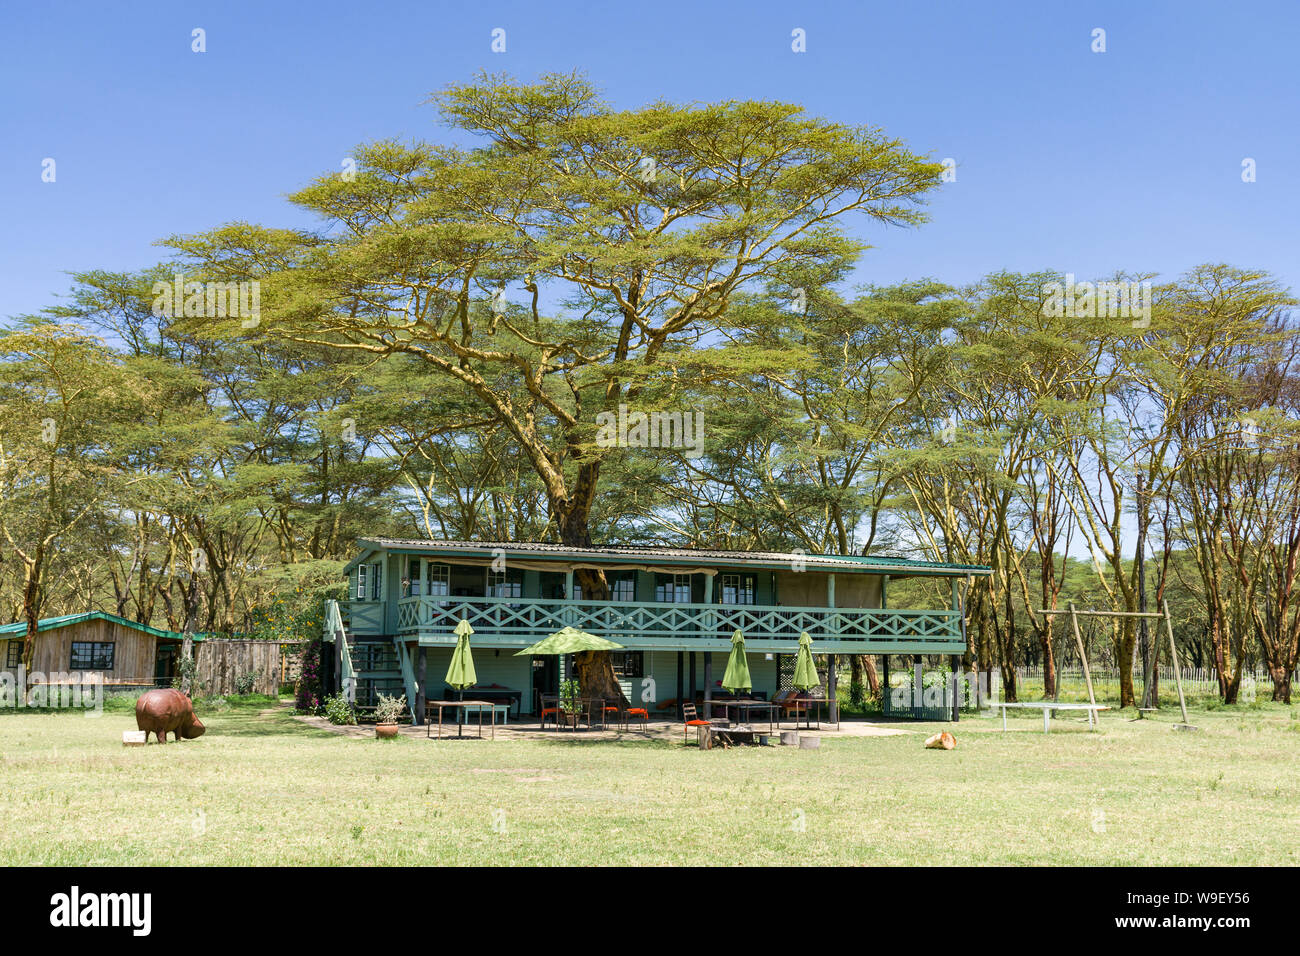 Sanctuaire en bois ferme restaurant sous les arbres de la fièvre, le lac Naivasha, Kenya Banque D'Images